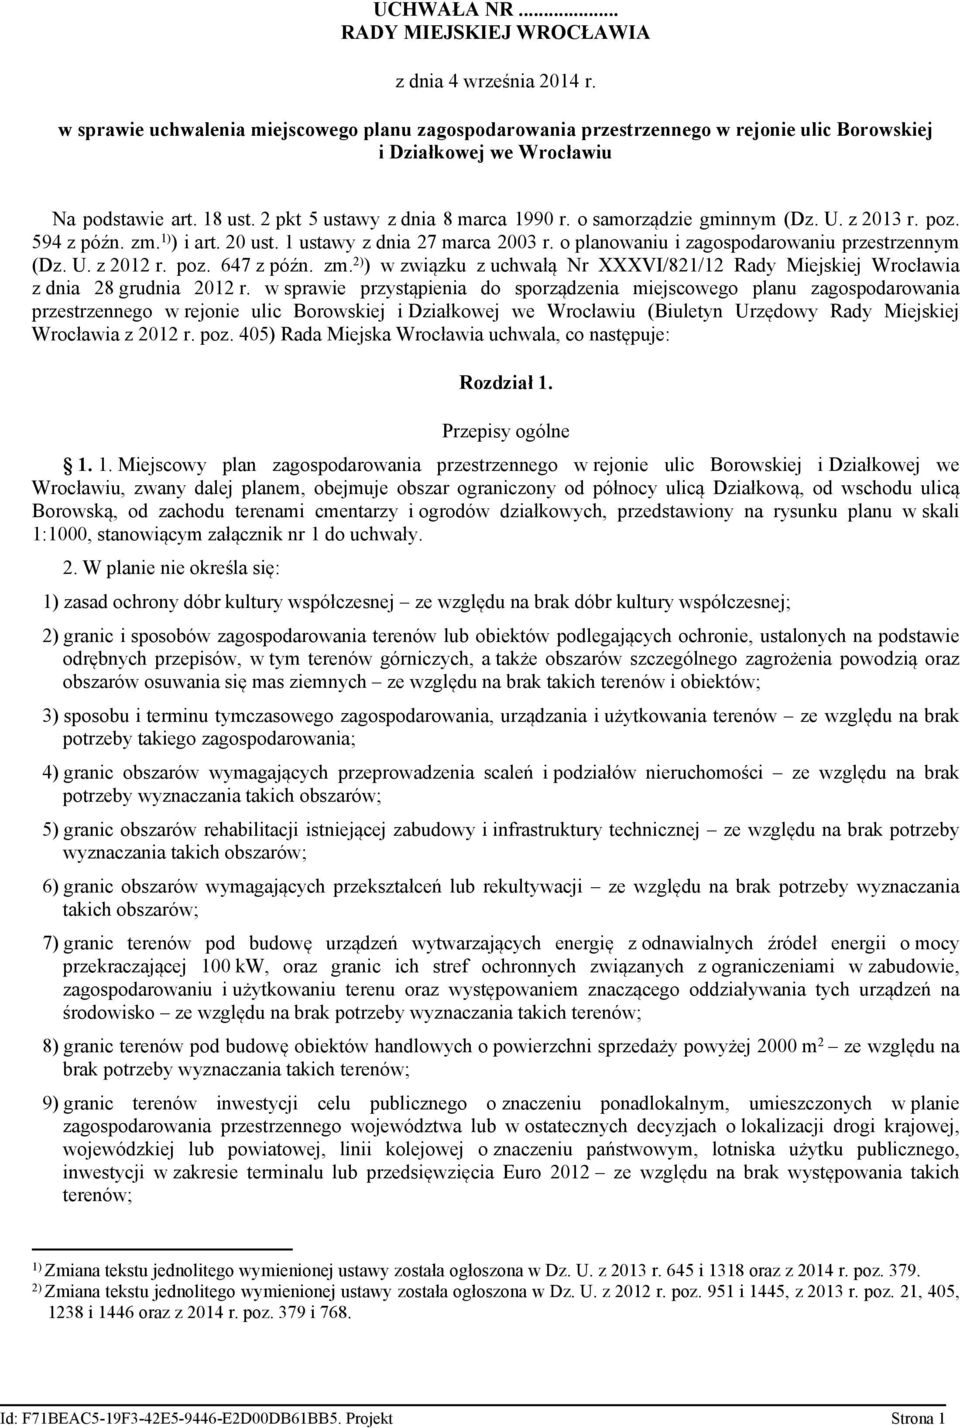 o samorządzie gminnym (Dz. U. z 2013 r. poz. 594 z późn. zm. 1) ) i art. 20 ust. 1 ustawy z dnia 27 marca 2003 r. o planowaniu i zagospodarowaniu przestrzennym (Dz. U. z 2012 r. poz. 647 z późn. zm. 2) ) w związku z uchwałą Nr XXXVI/821/12 Rady Miejskiej Wrocławia z dnia 28 grudnia 2012 r.